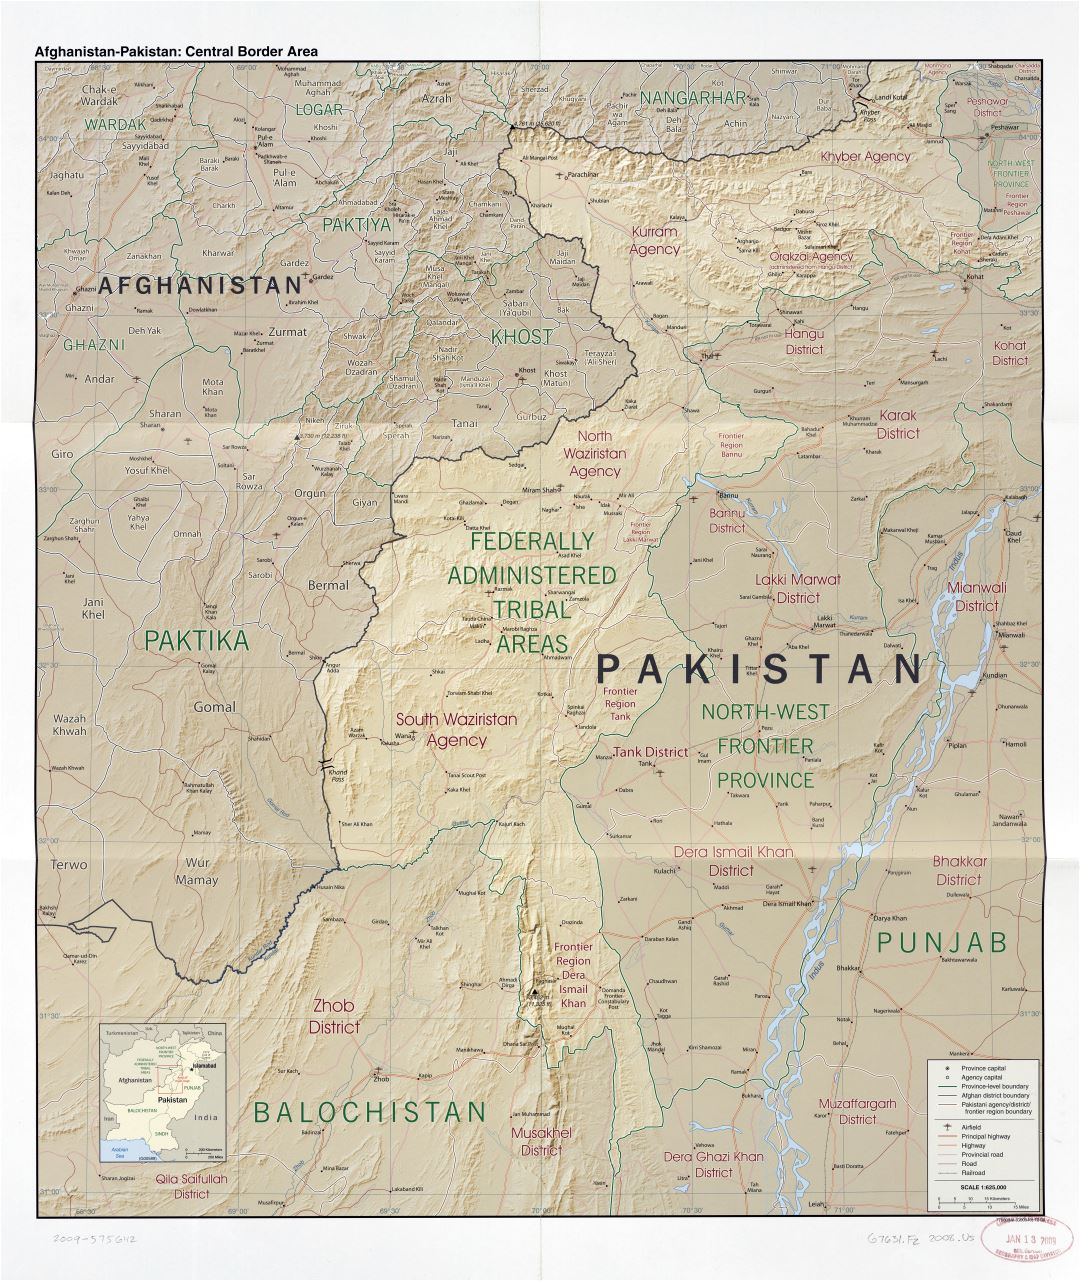 A gran escala detallado mapa del área fronteriza central de Afganistán - Pakistán con relieve, administrativas divisiones, carreteras, ferrocarriles, aeródromos y ciudades - 2008